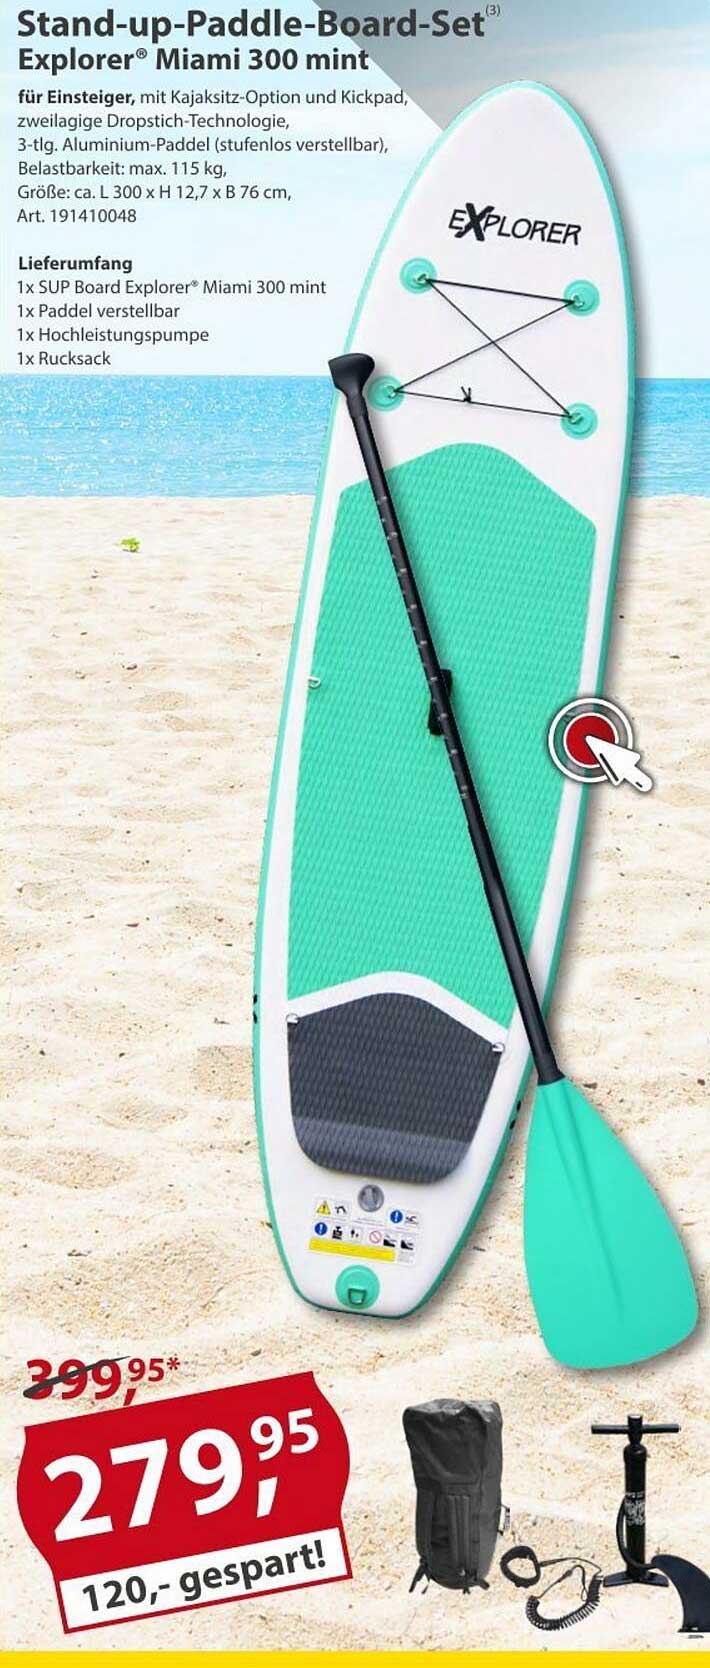 Stand-up-paddle-board-set Explorer Miami 300 Angebot bei Sonderpreis  Baumarkt